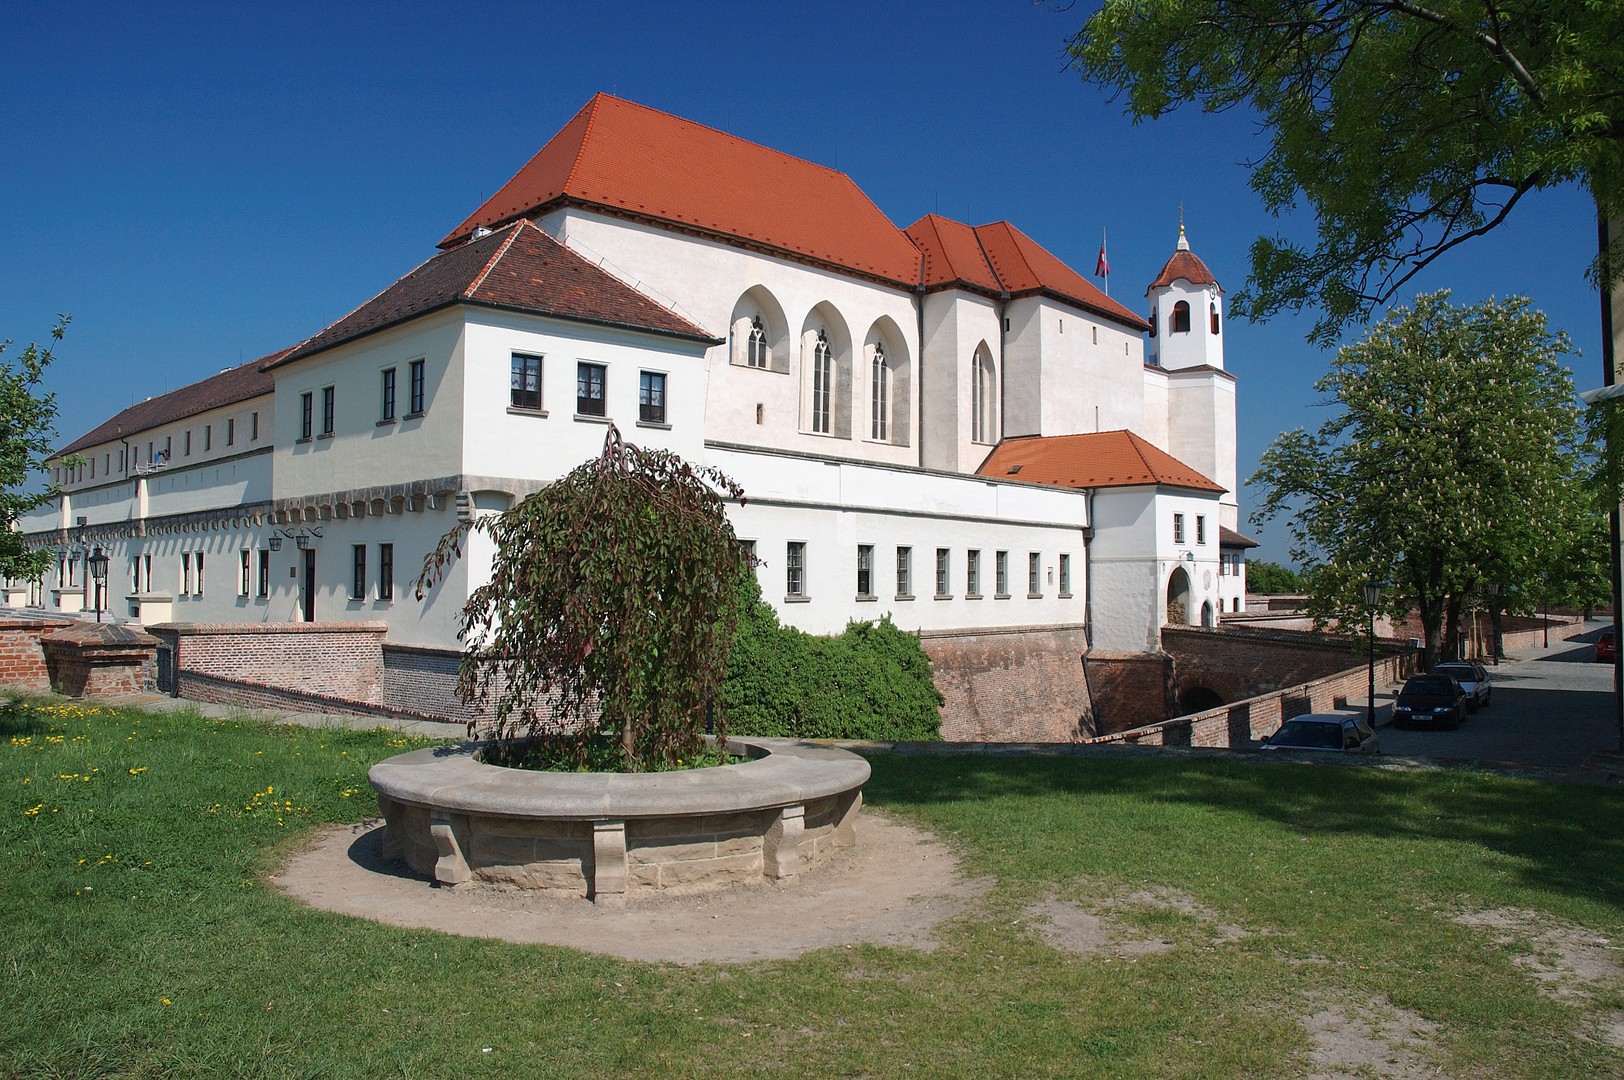 The castle of Brno - Spilberk